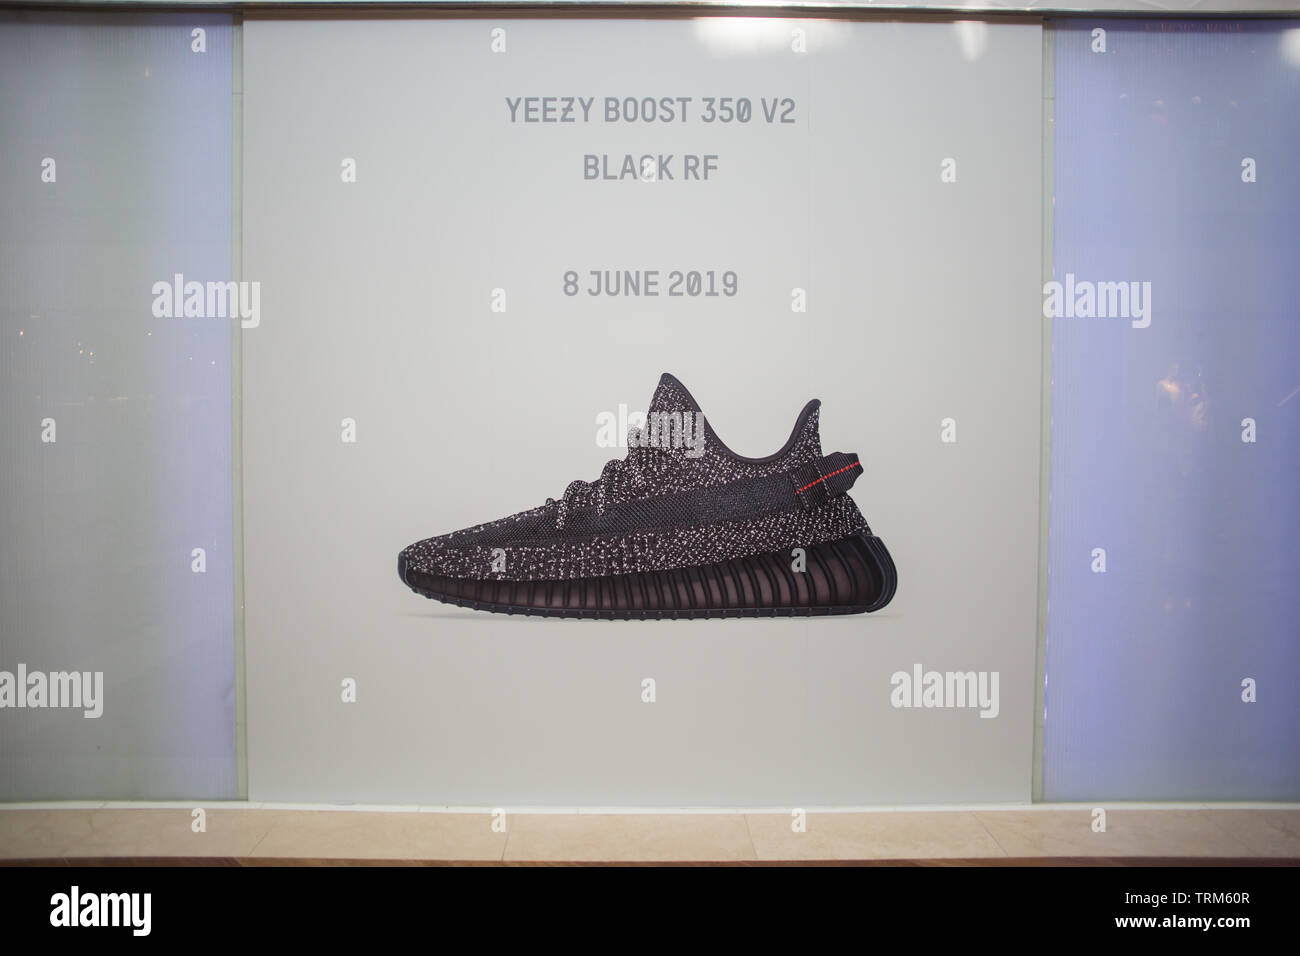 Freigabe von Adidas Yeezy Boost 350 V2 Schwarz reflektierende Schuhe, nur  20 Paare in Singapur zur Verfügung Stockfotografie - Alamy